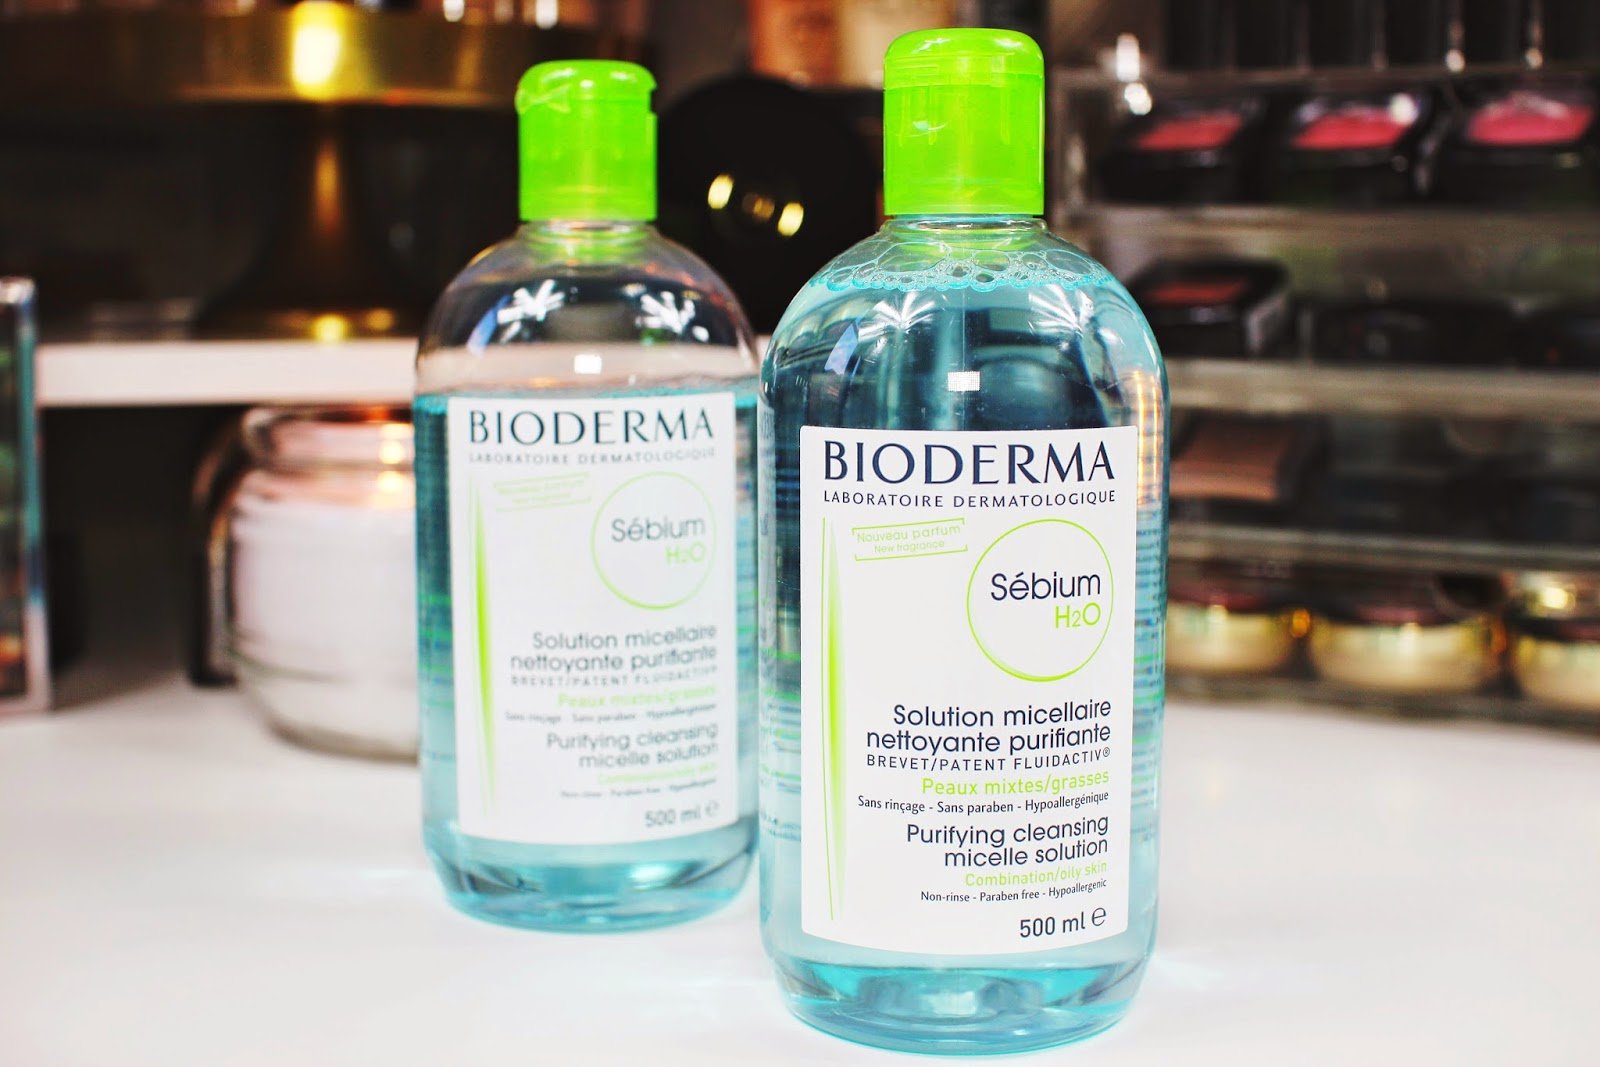 Nước tẩy trang Bioderma xanh rất thích hợp với những ai sở hữu làn da nhạy cảm